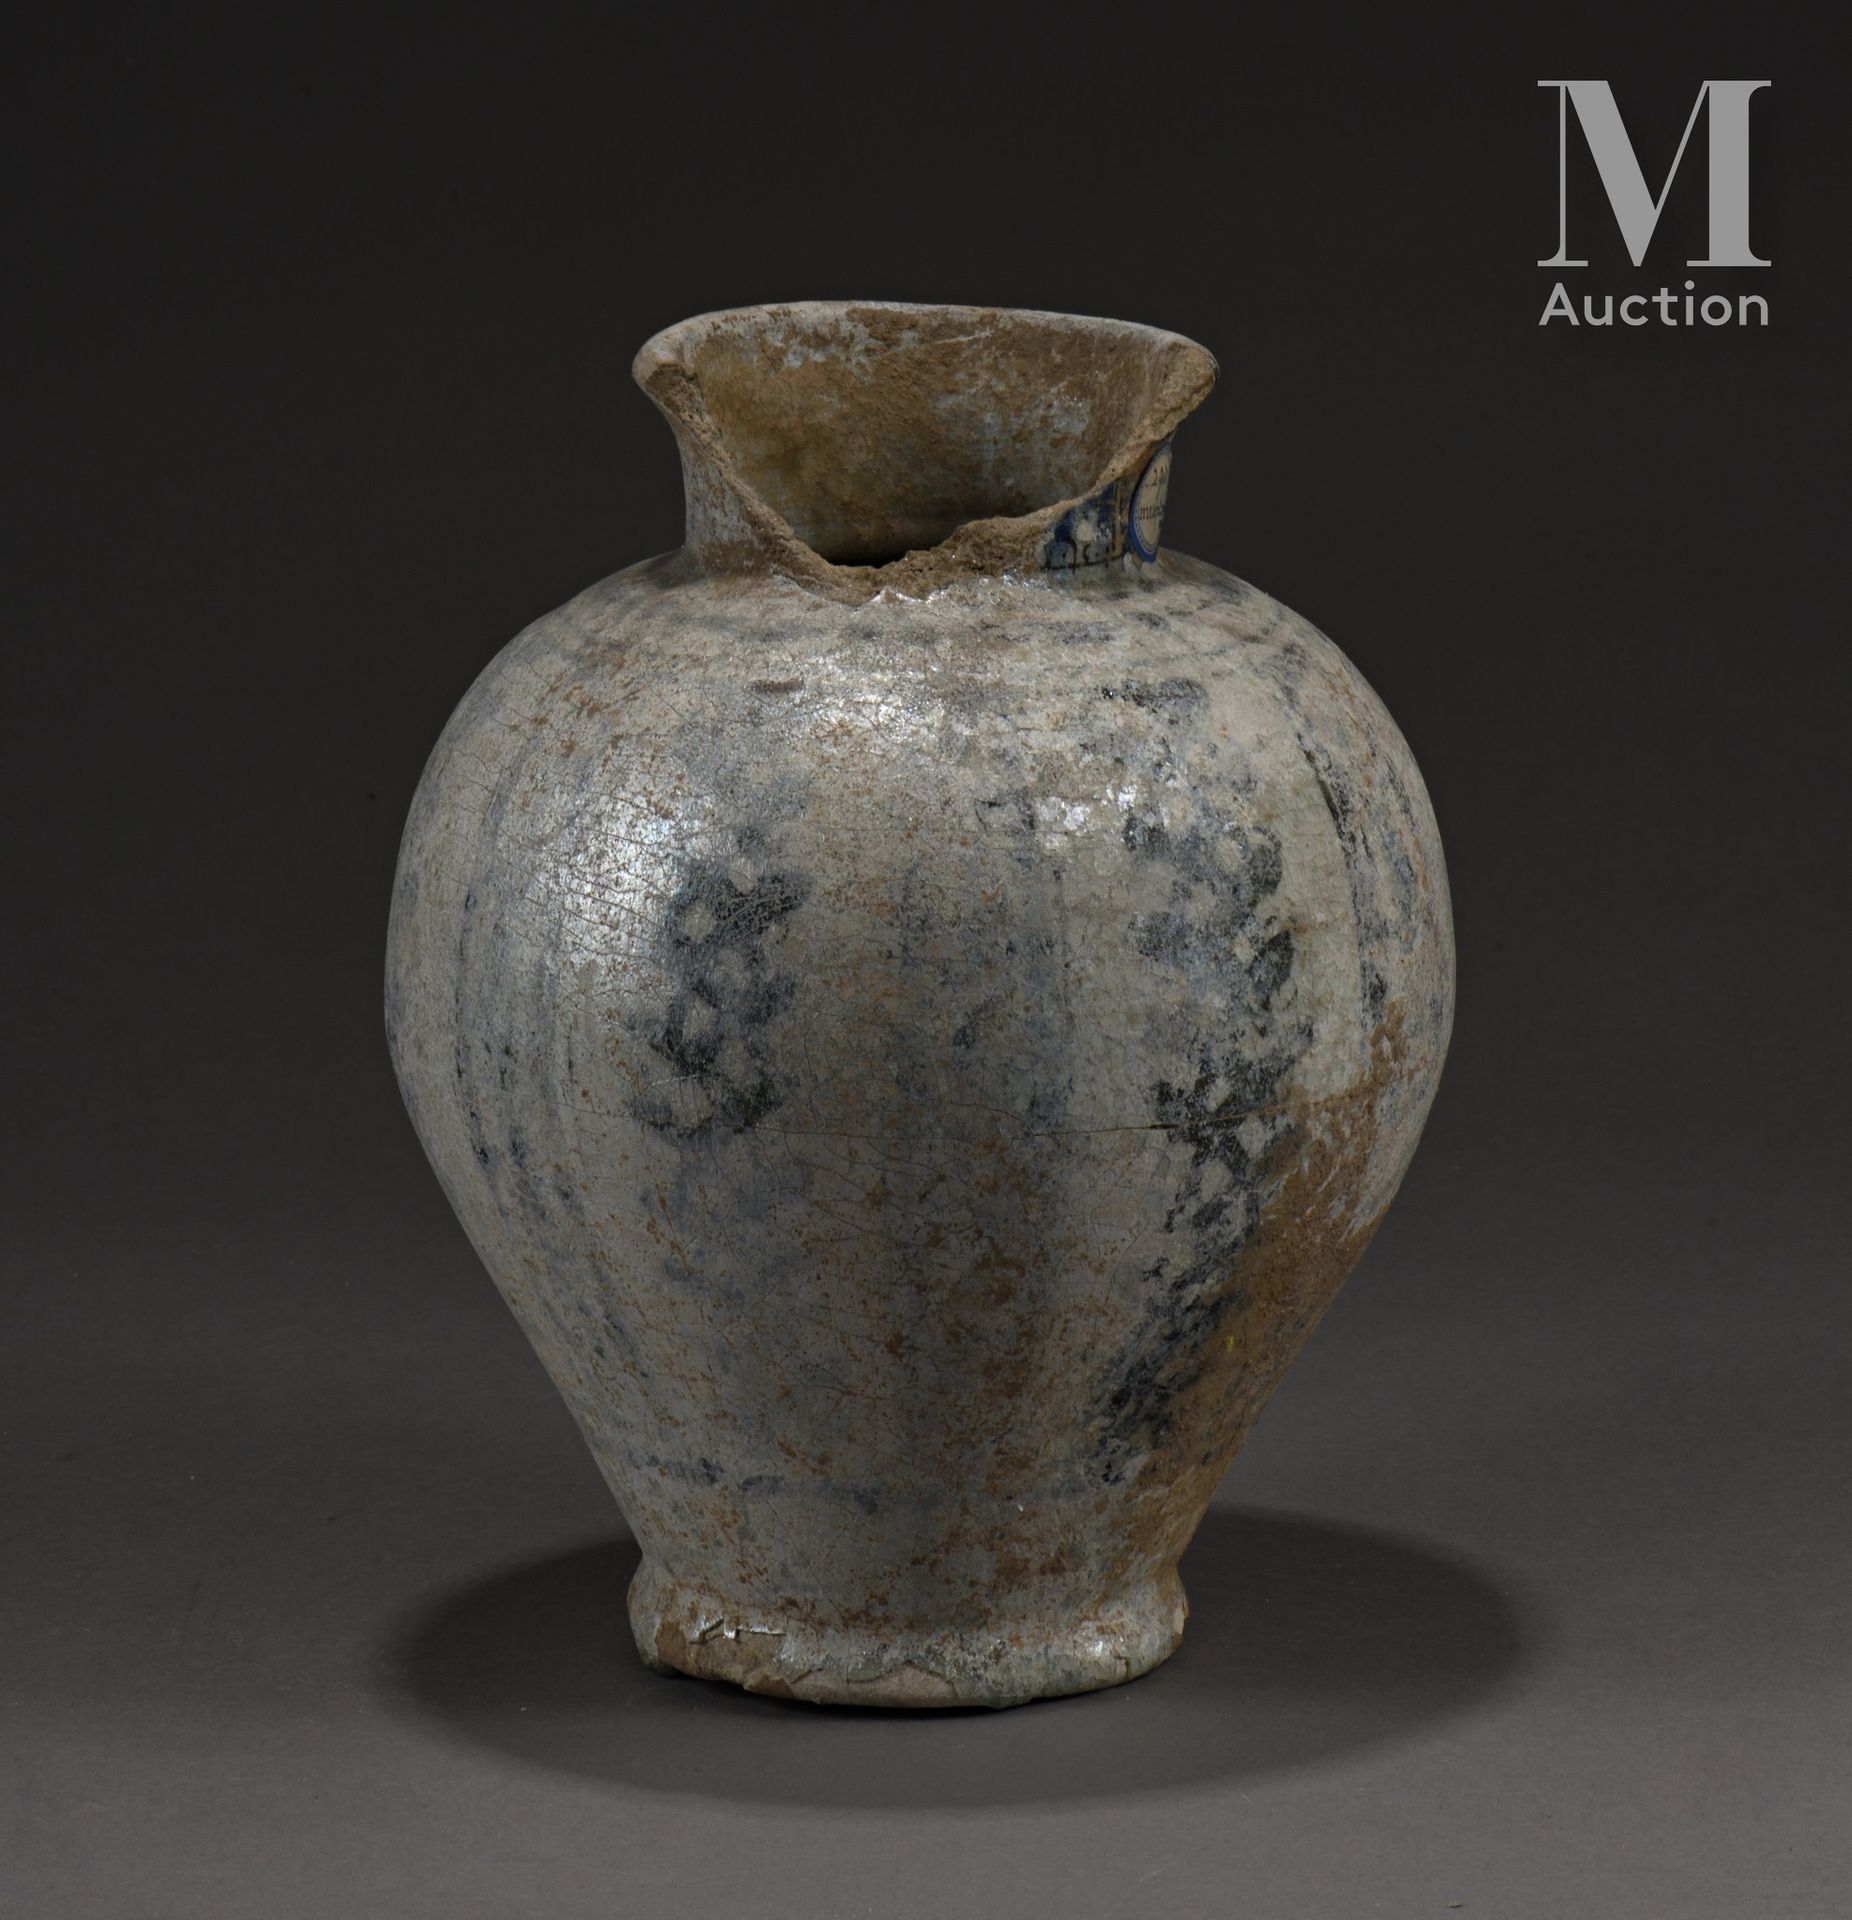 Vase mamelouque Egipto o Siria, siglos XIV-XV

Balaustre de cerámica de pasta si&hellip;